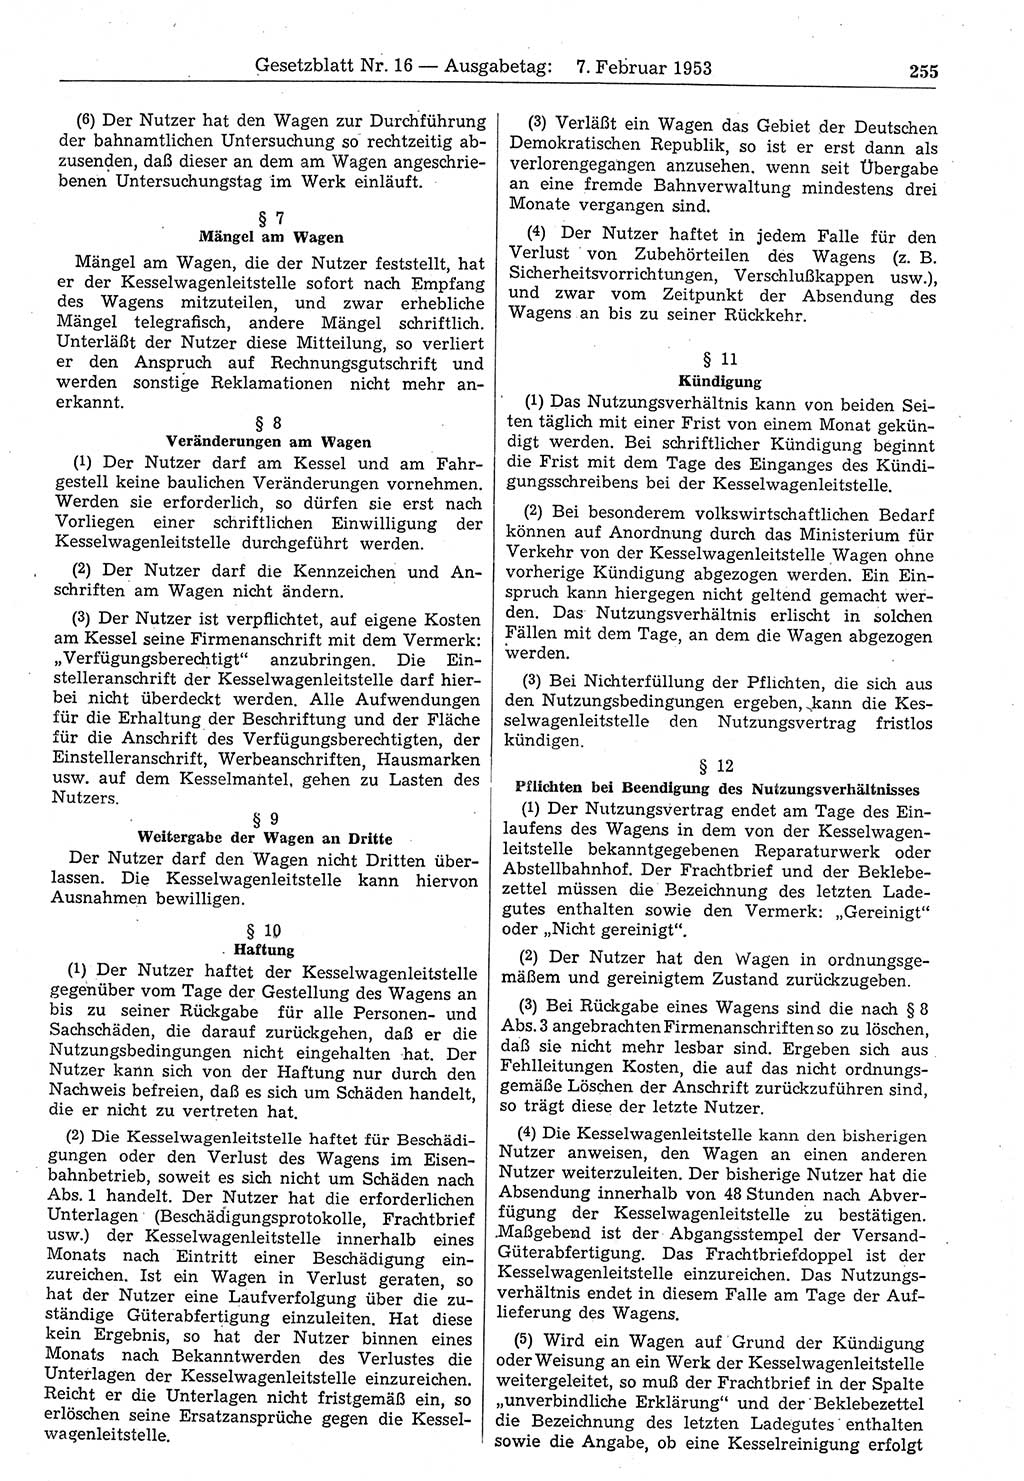 Gesetzblatt (GBl.) der Deutschen Demokratischen Republik (DDR) 1953, Seite 255 (GBl. DDR 1953, S. 255)